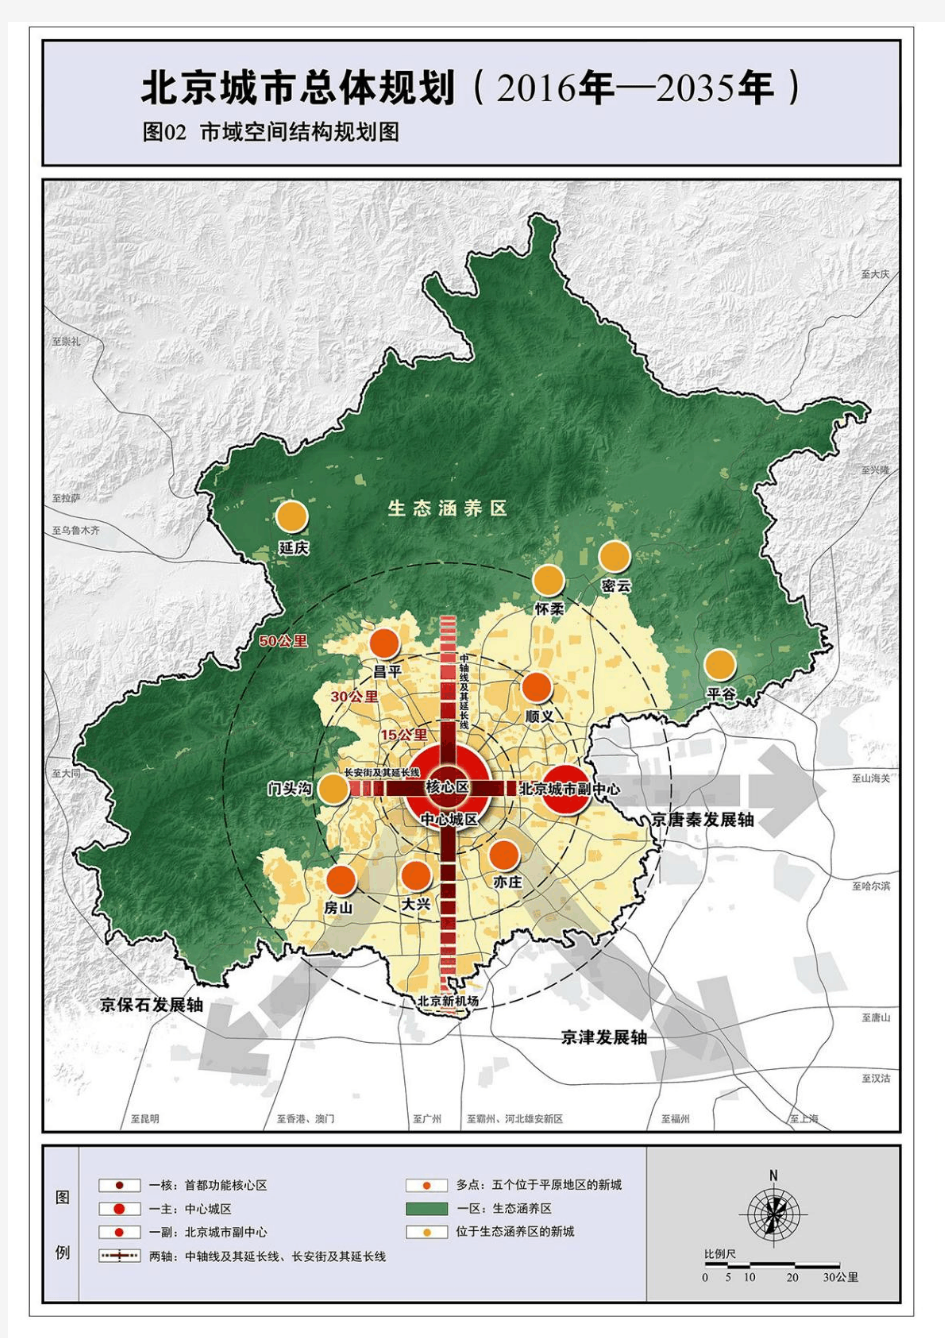 北京城市总体规划(2016年—2035年)图纸全